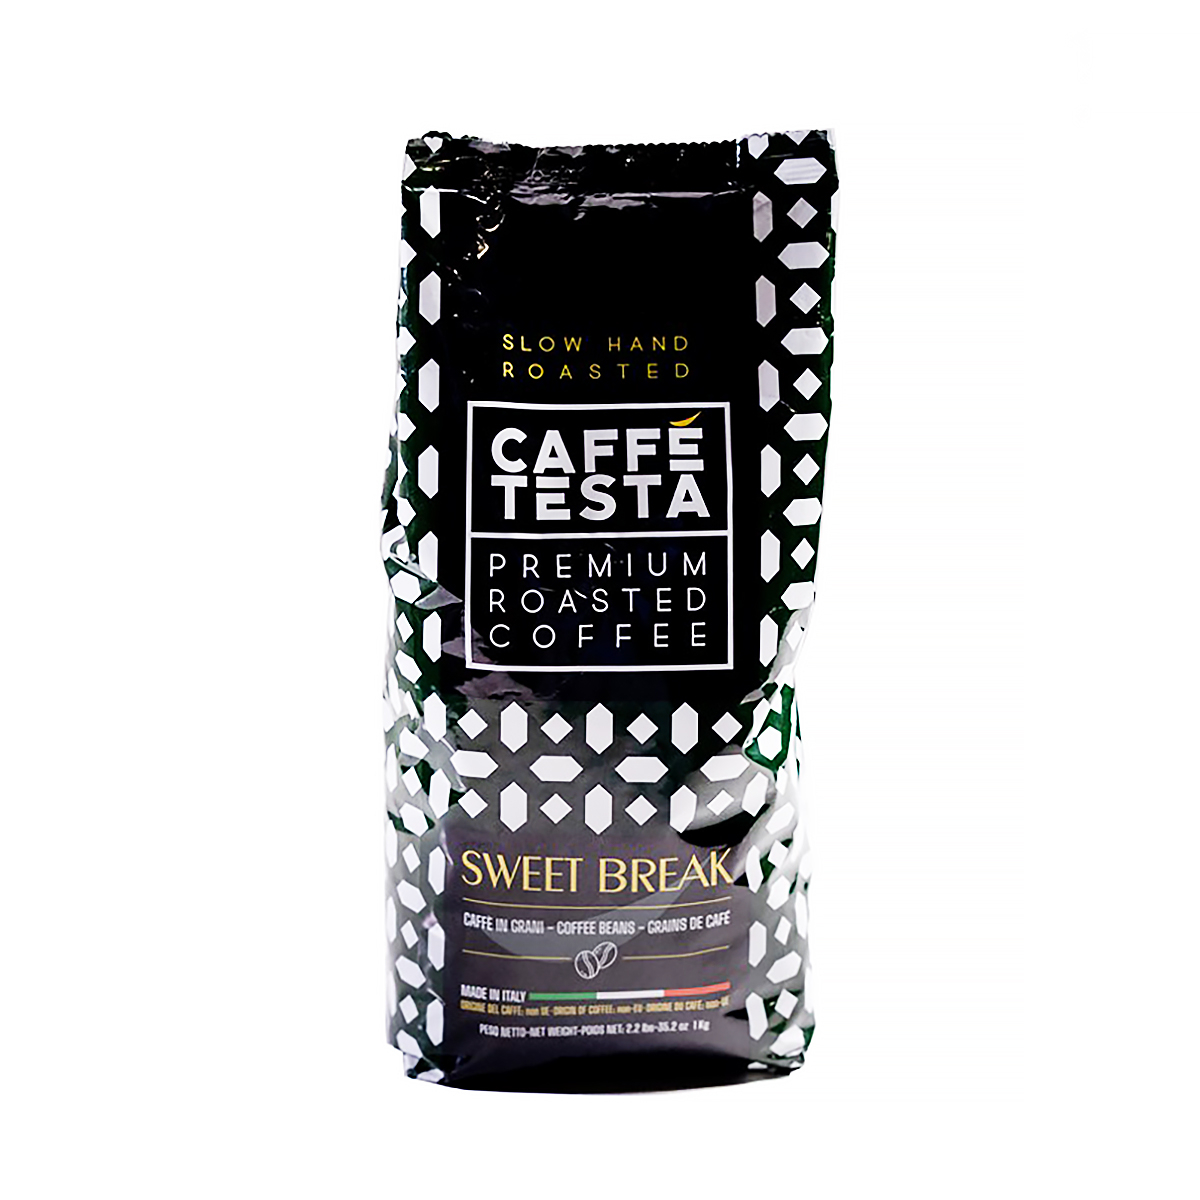 Кофе в зернах Caffe Testa Sweet Break, 1 кг кофе в зернах caffe testa fifty fifty 1 кг